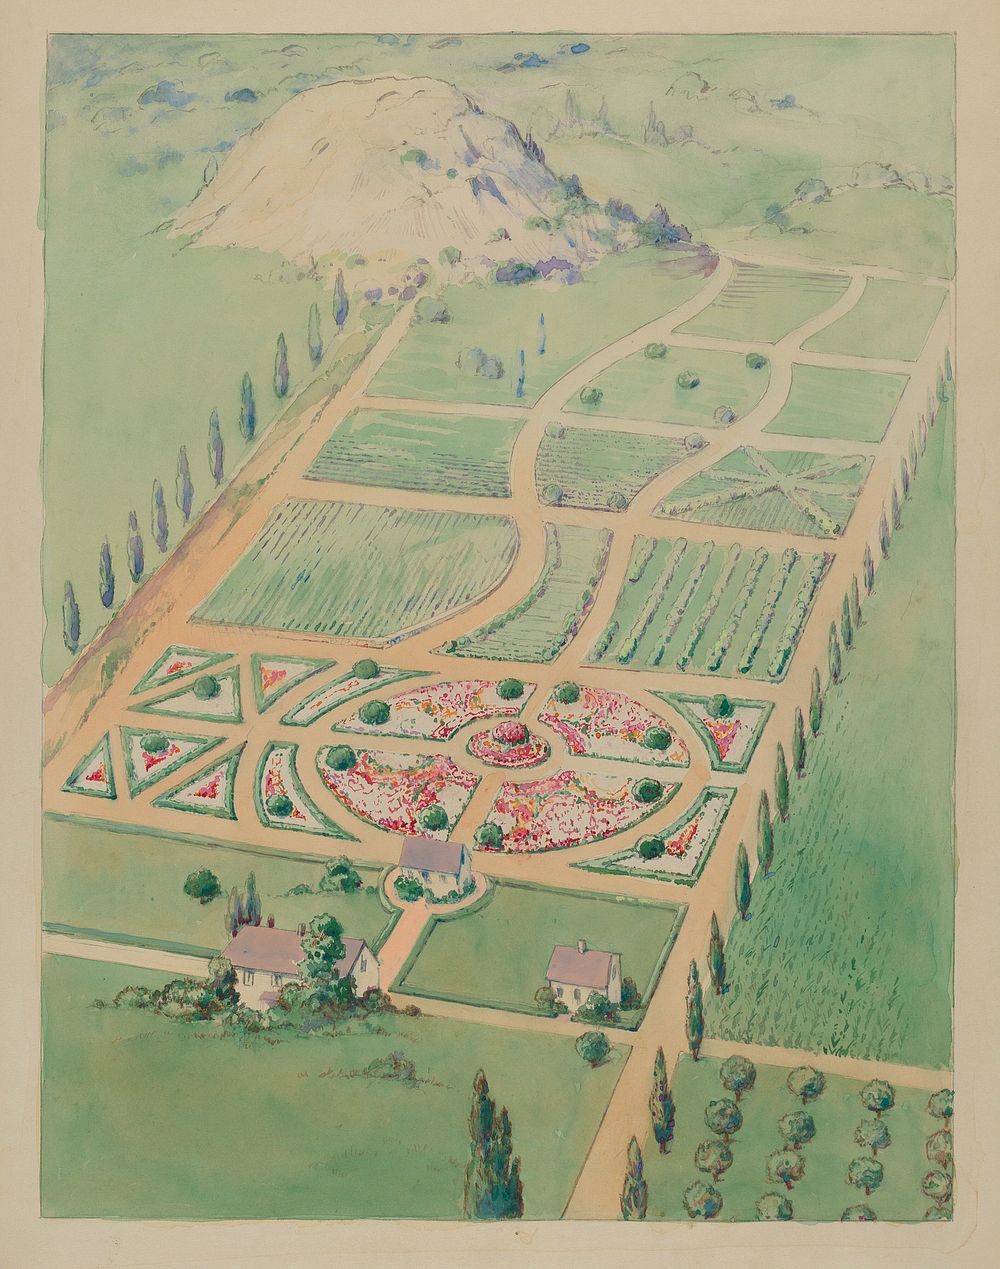 A. Elliot Estate (ca. 1936) by Gilbert Sackerman.  